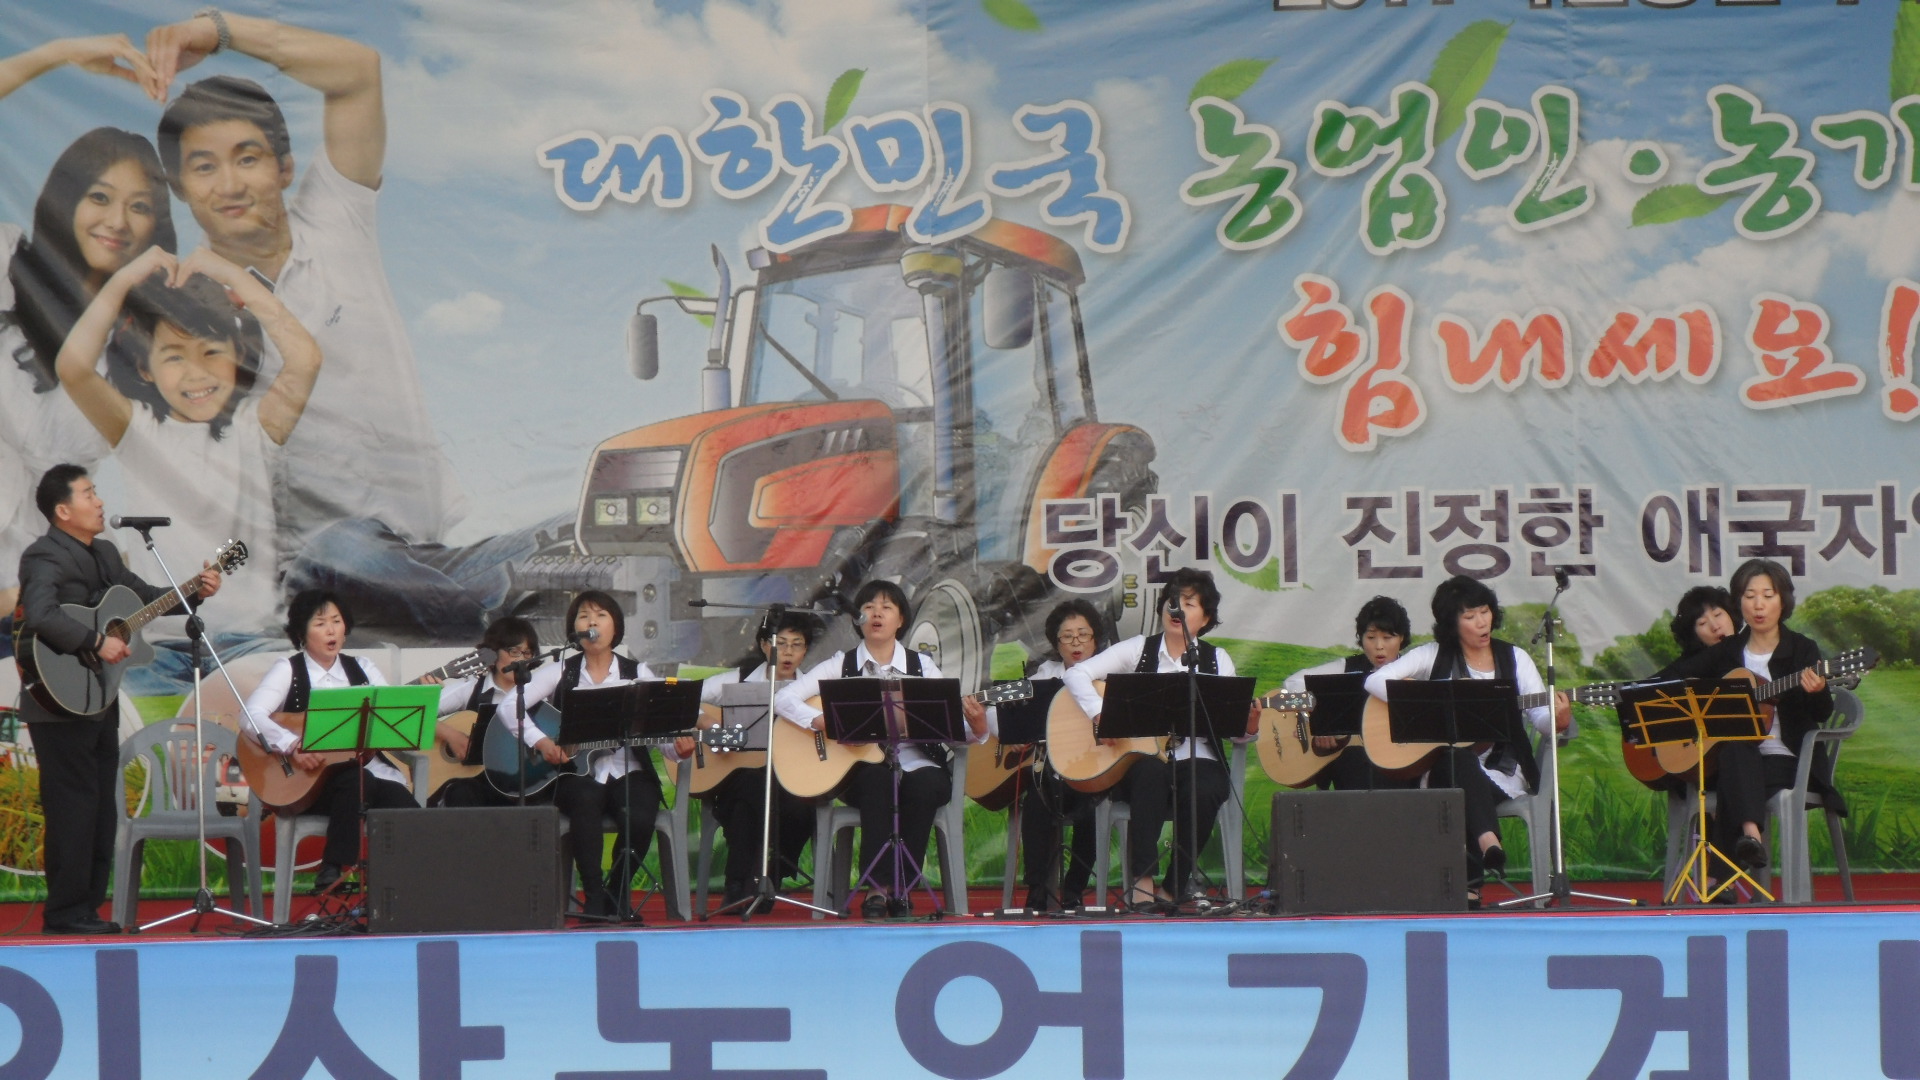 2011 익산농업기계박람회 공연(기타교실팀)4